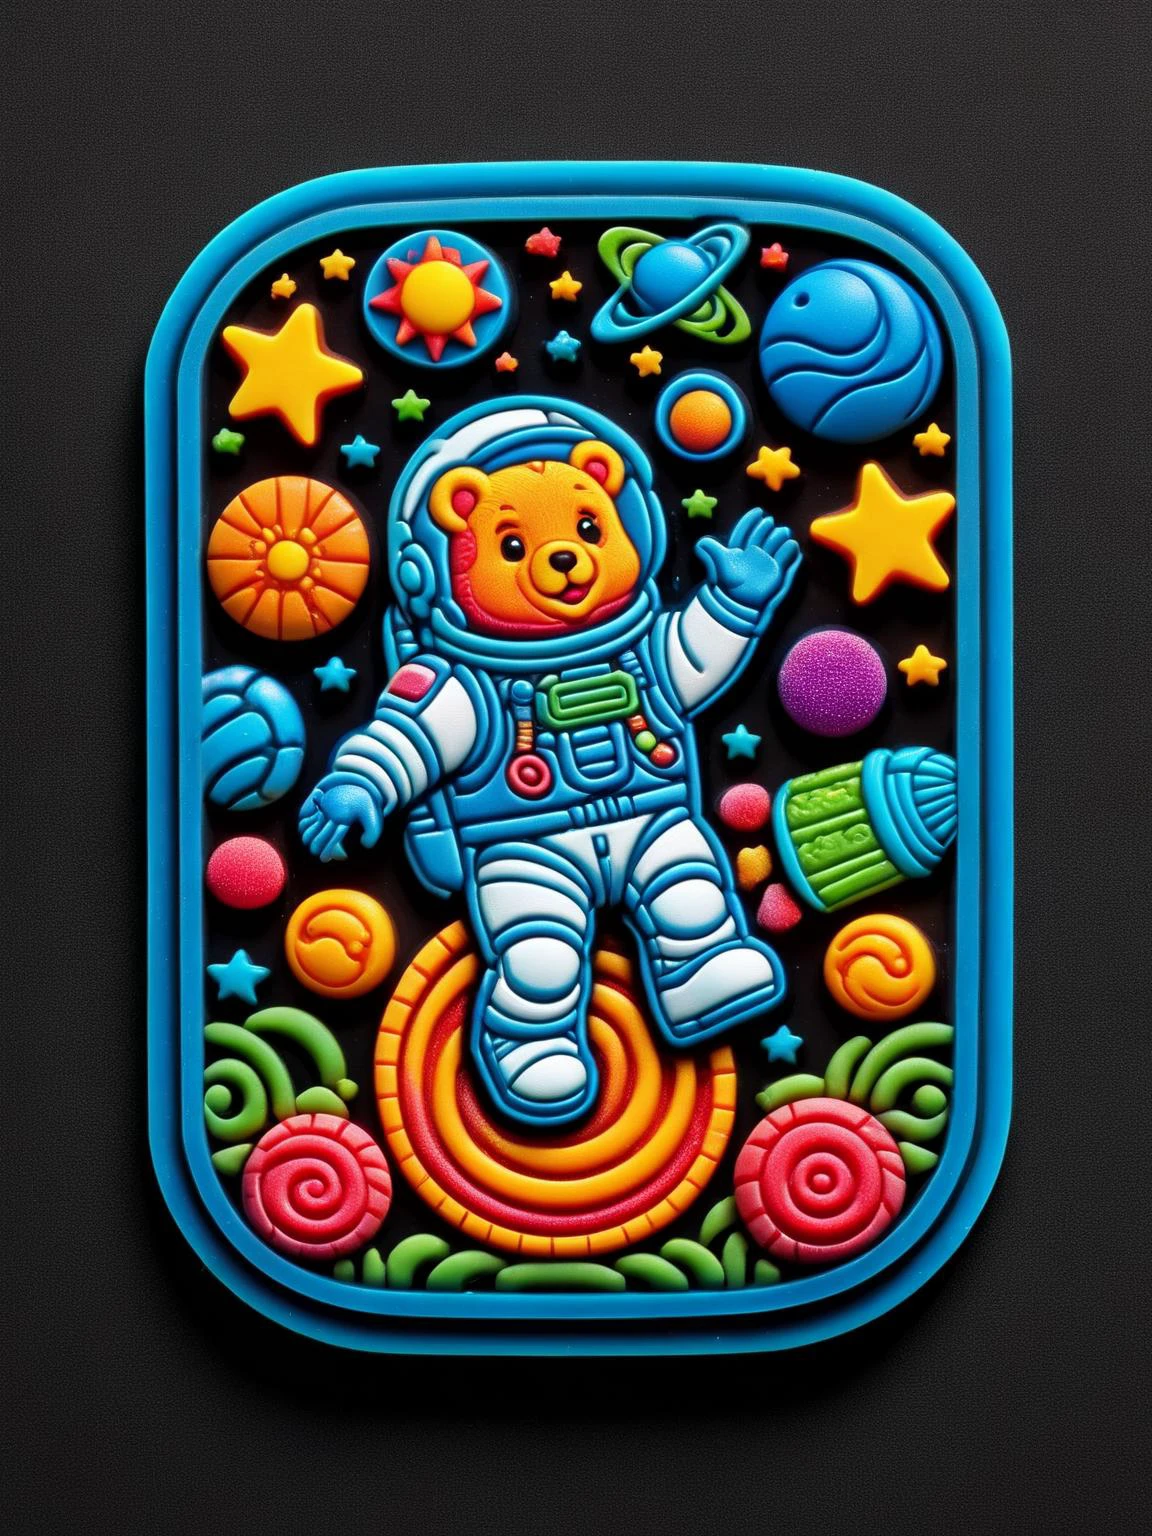 キャンディーカラーのゴムパッチで作られた惑星を通り過ぎて浮かぶ、ラルゴムパッチのミニチュアグミベア宇宙飛行士, 輝くスターバースト星雲に手を伸ばす 